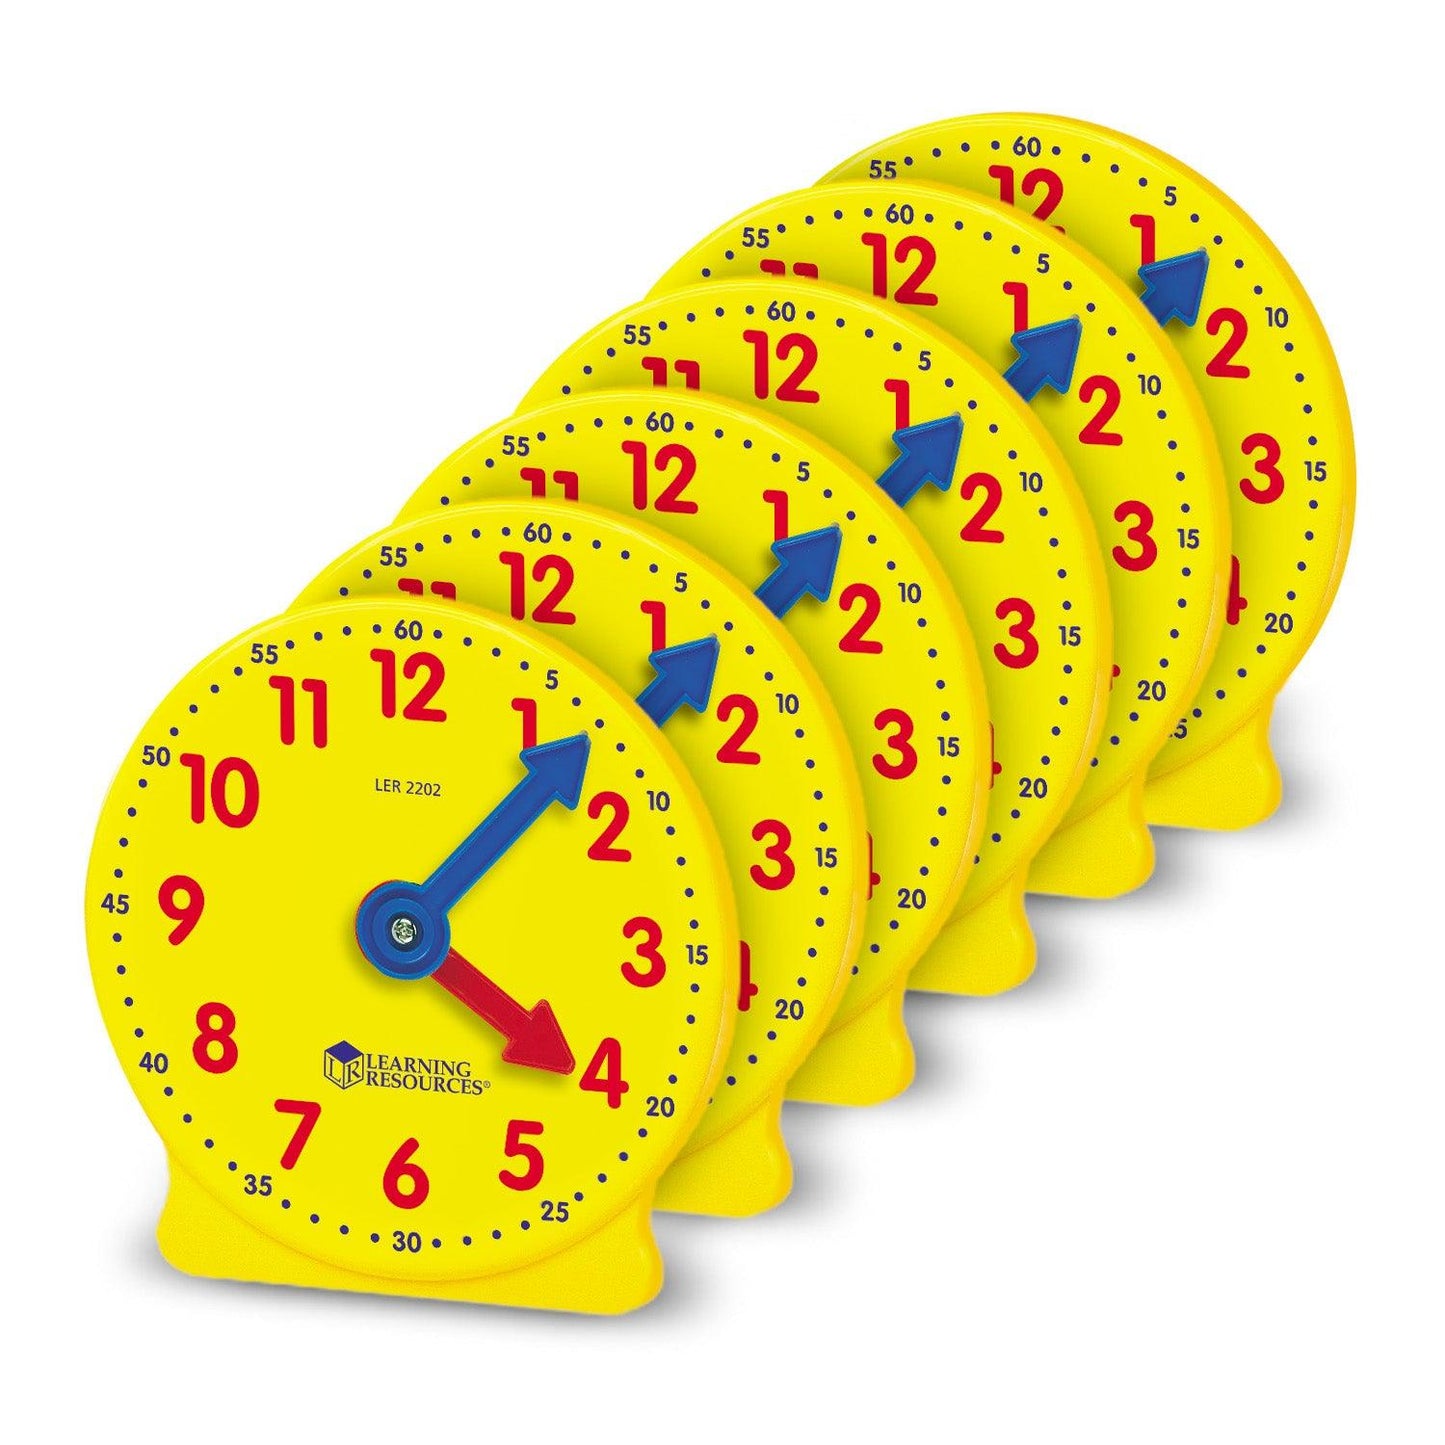 Big Time™ Geared Mini-Clocks, Set of 6 - Loomini